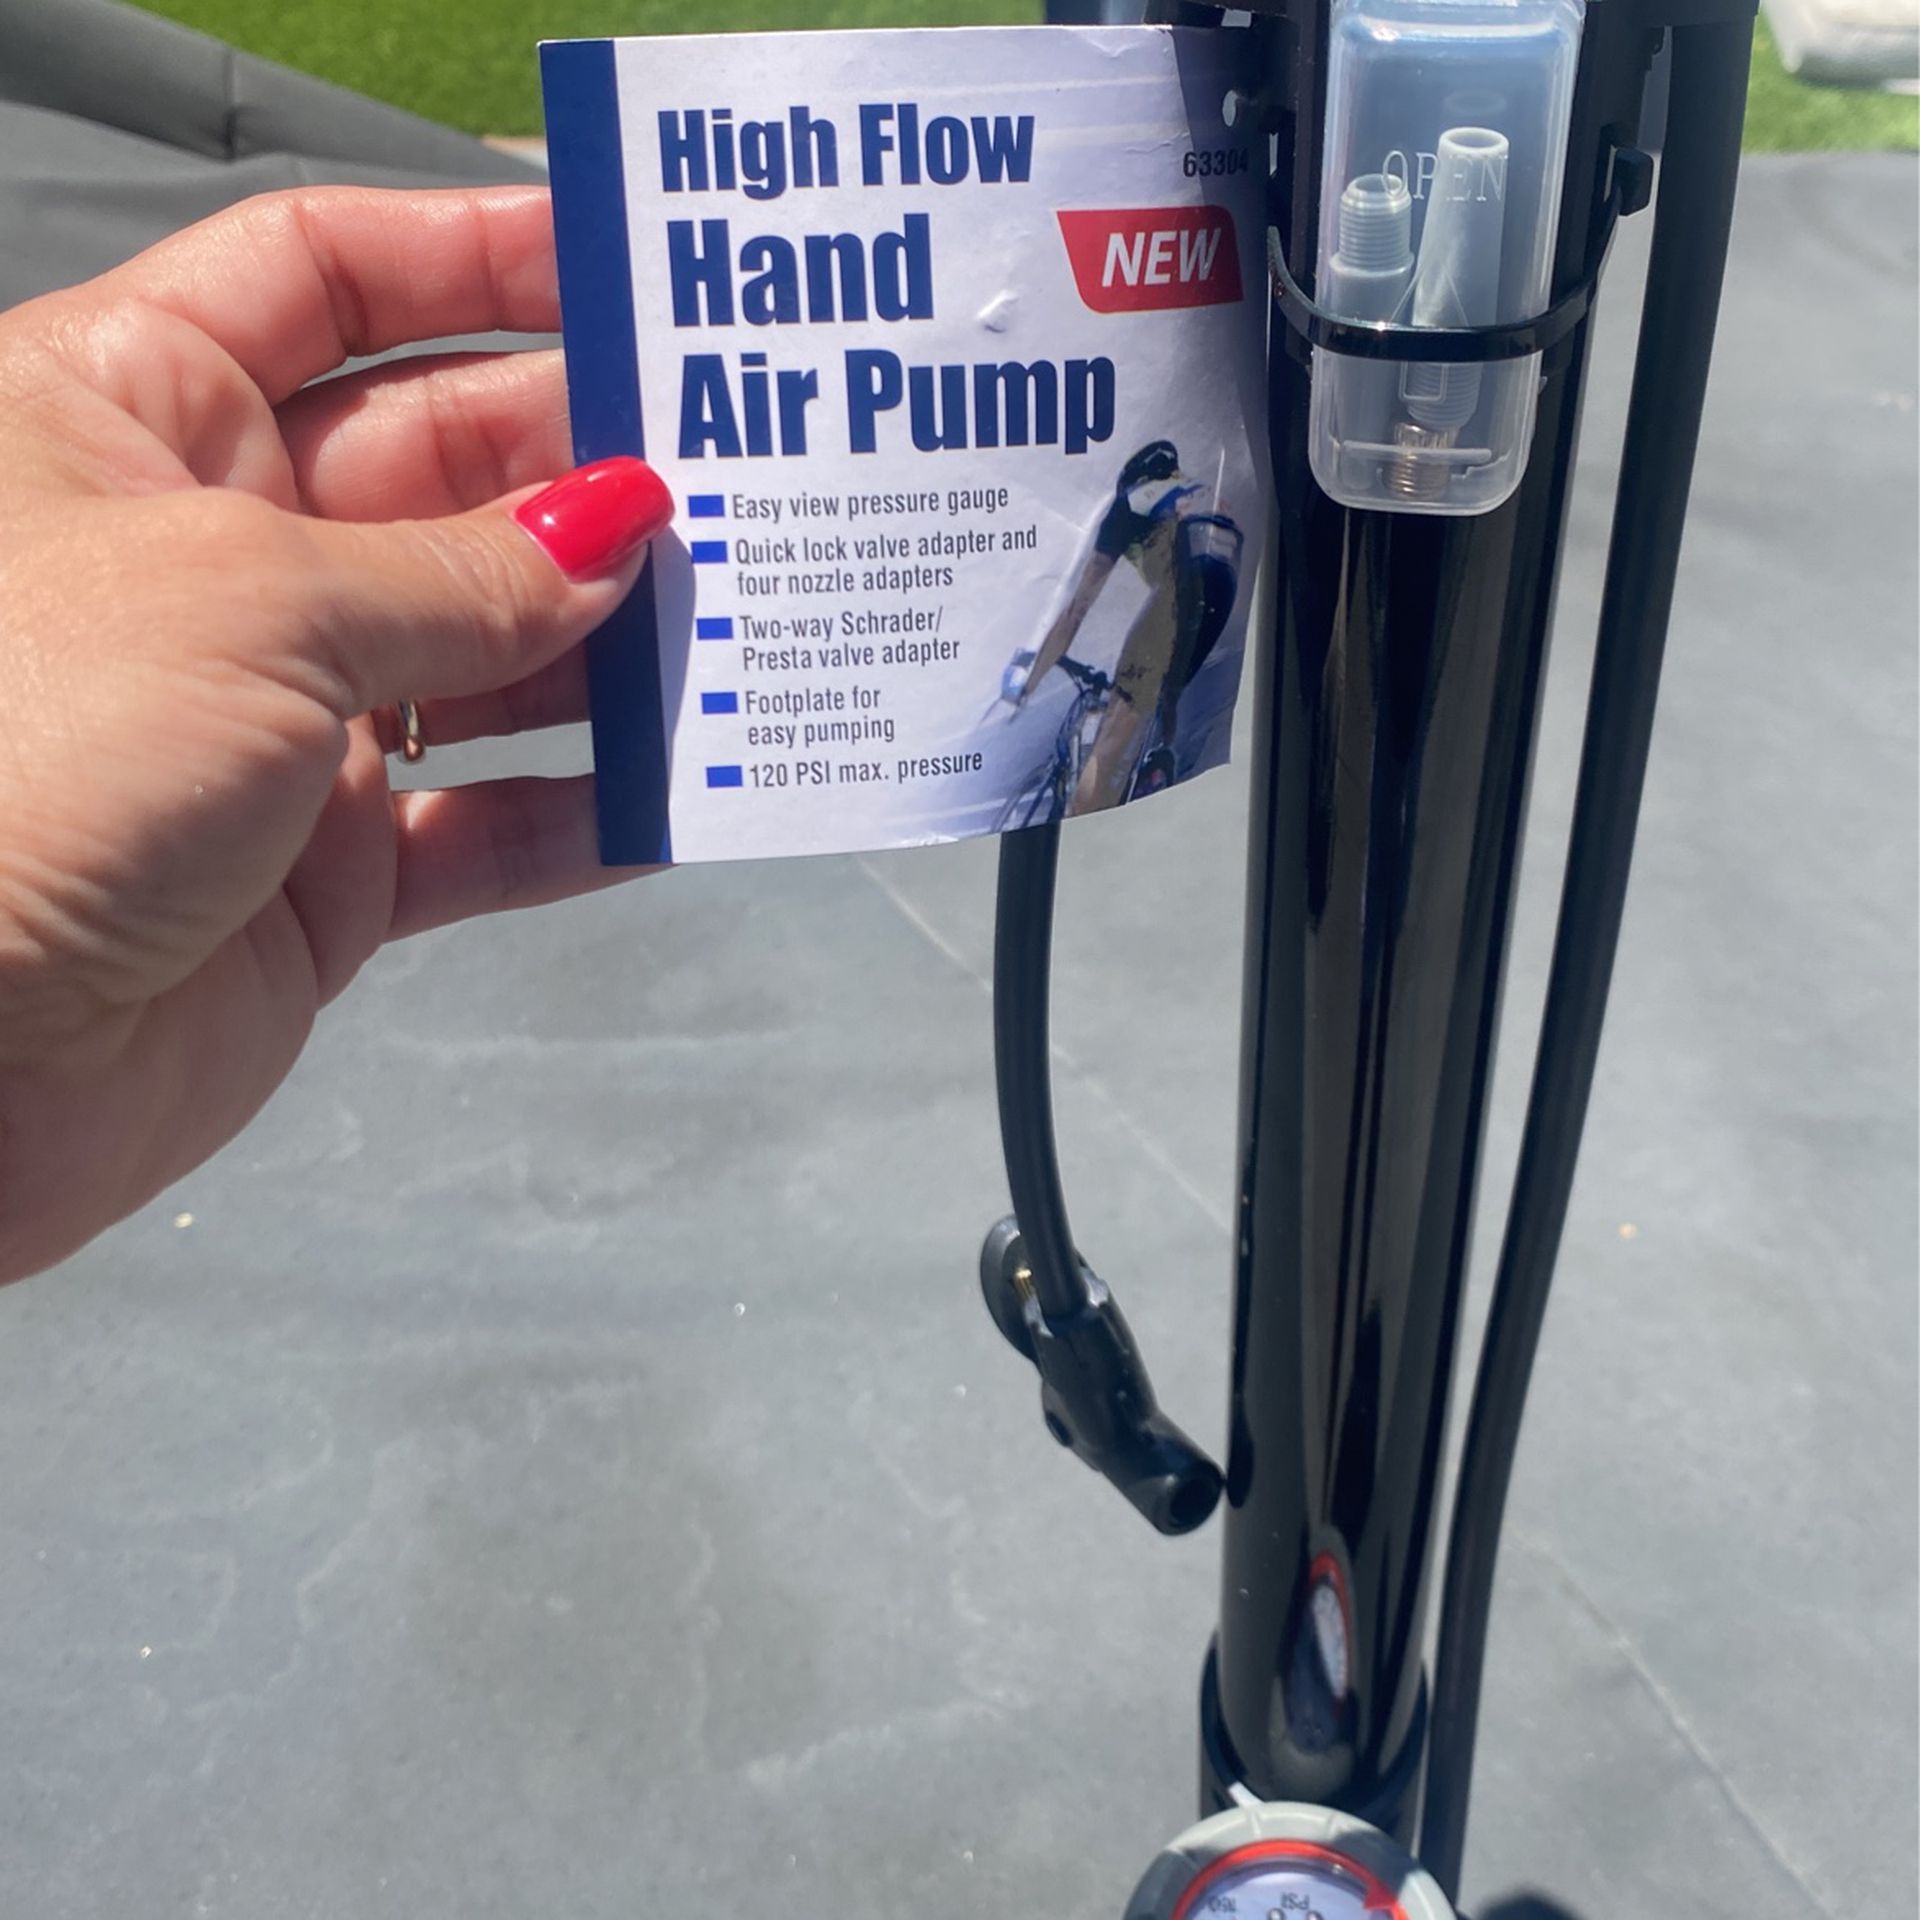 High Flow Hand Air Pump